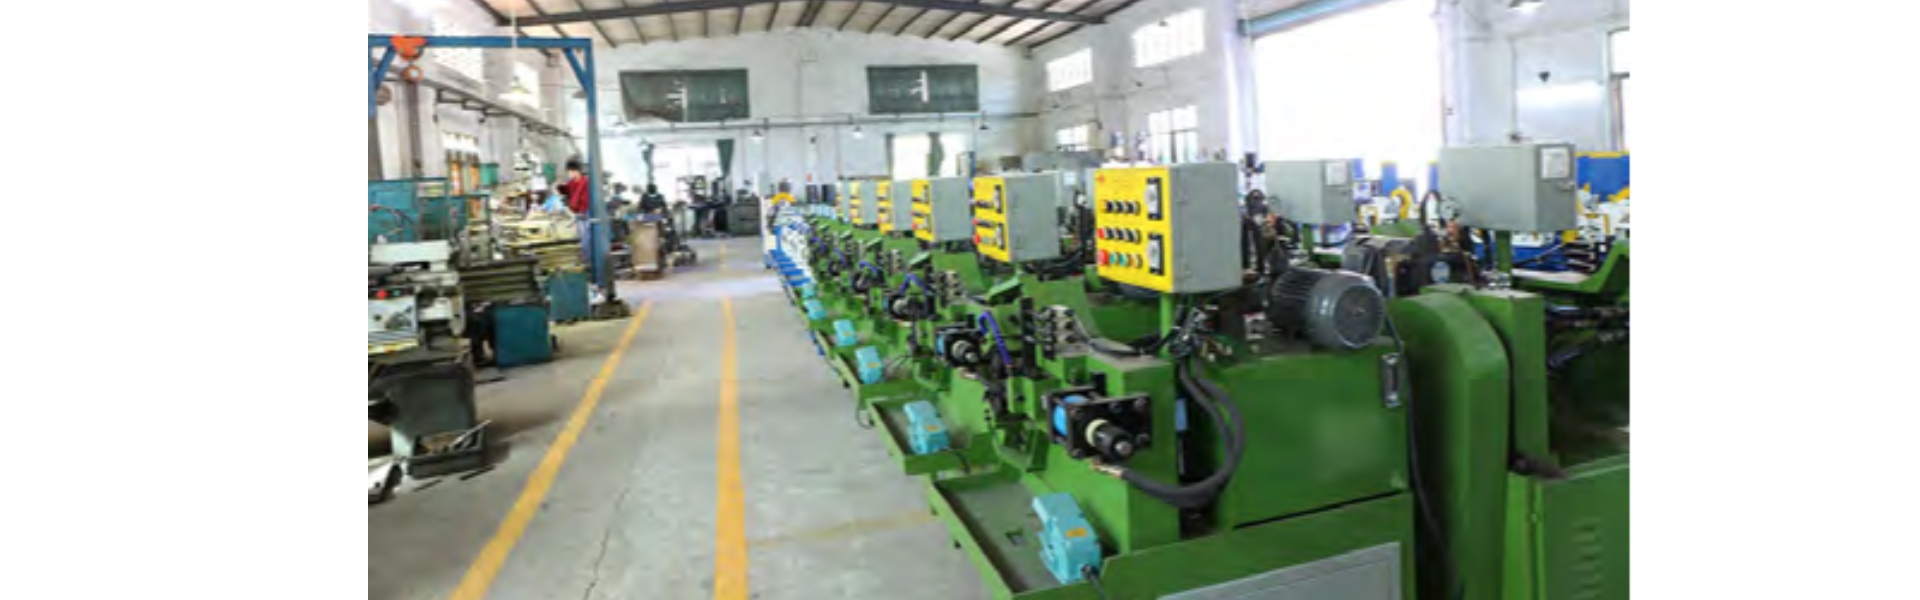 ロールパスマシン、自動パイプ切断機、完全自動歯形ローラー,Dongguan Hongbo Precision Machinery Manufacturing Co.,Ltd.